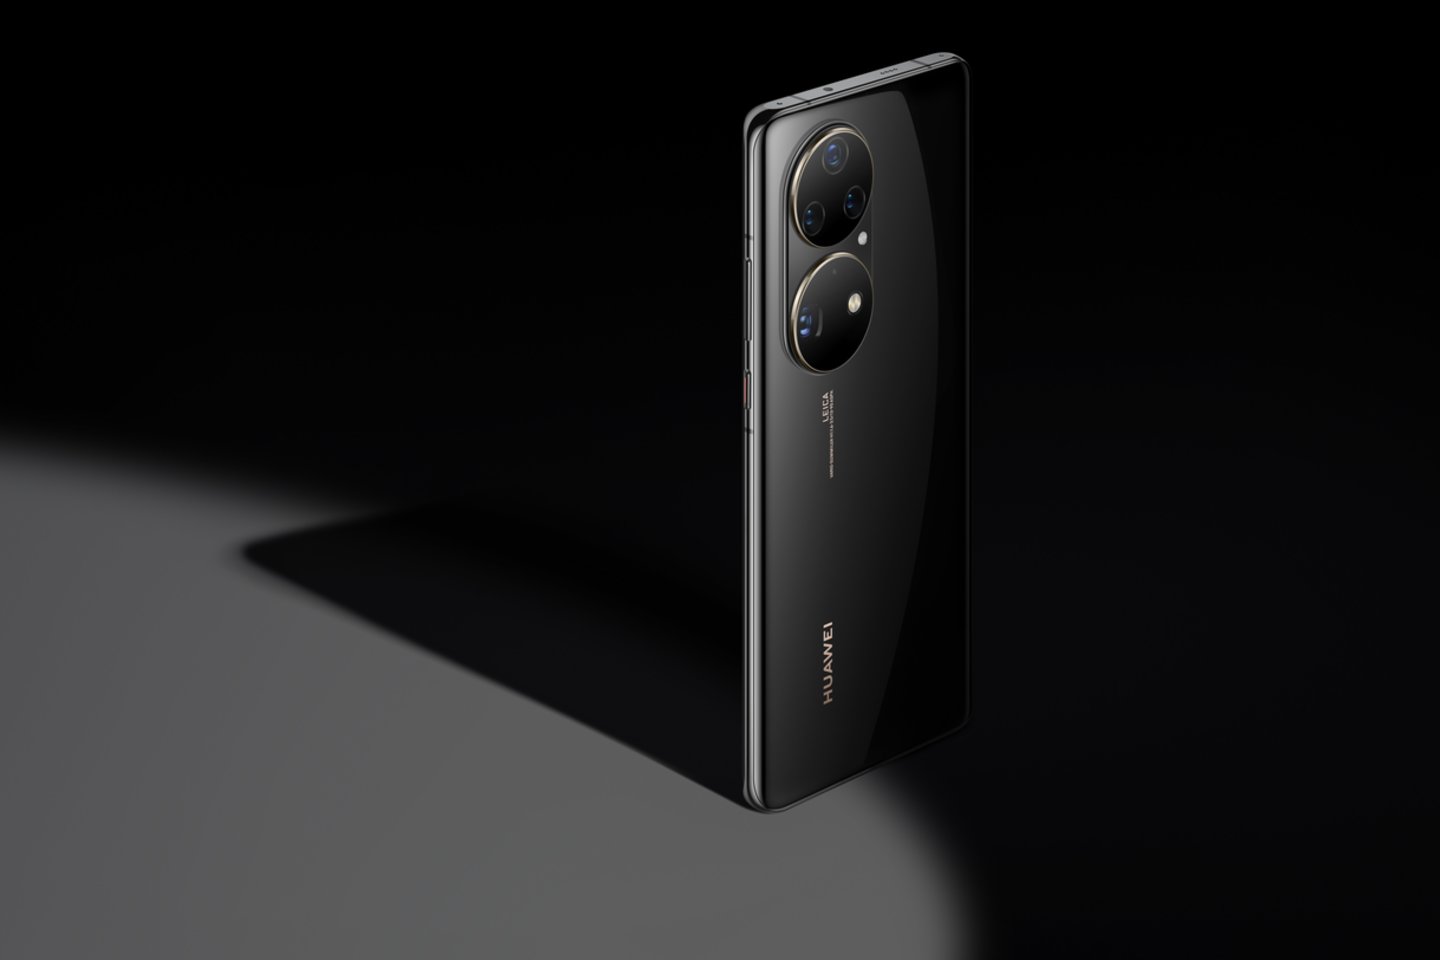 „Huawei P50 Pro“ vartotojai gali džiaugtis net dviejų matricų kameromis su ypač tiksliai spalvas atkuriančiu 50 MP raiškos pagrindiniu objektyvu.